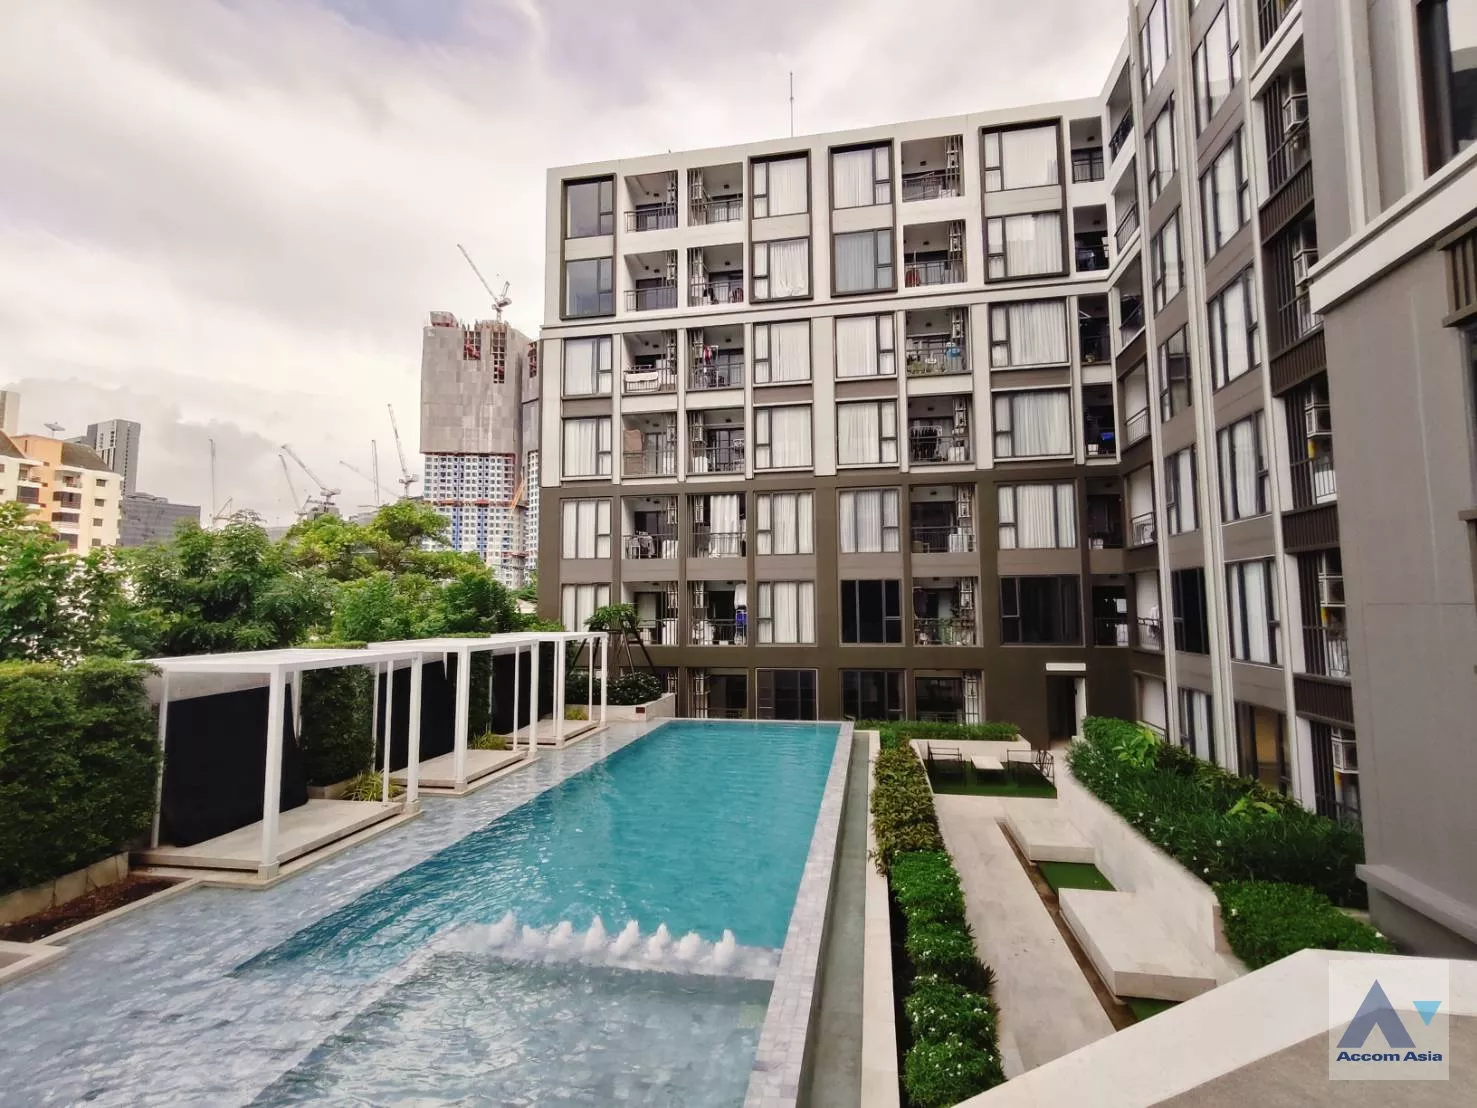  2 THE NEST Sukhumvit 64 - Condominium - Sukhumvit - Bangkok / Accomasia